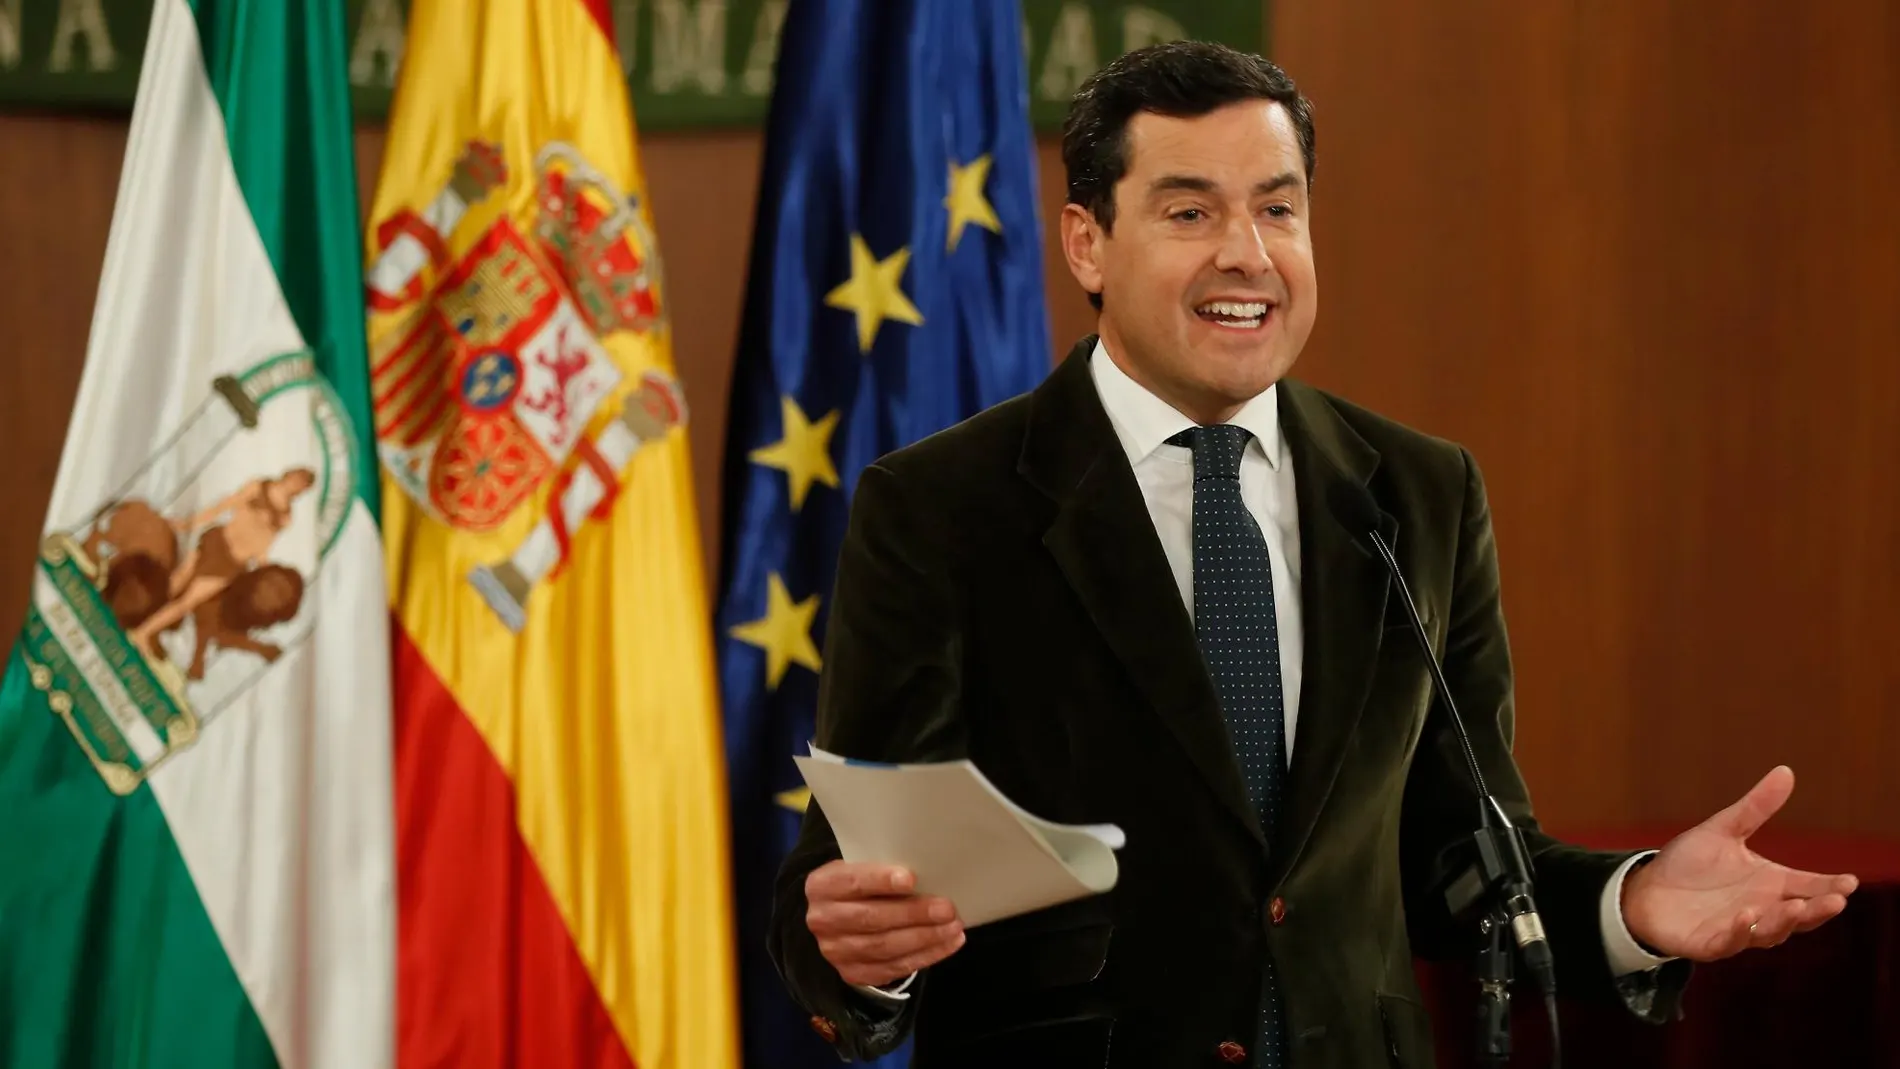 El próximo presidente de la Junta de Andalucía será recibido por Pedro Sánchez / Efe